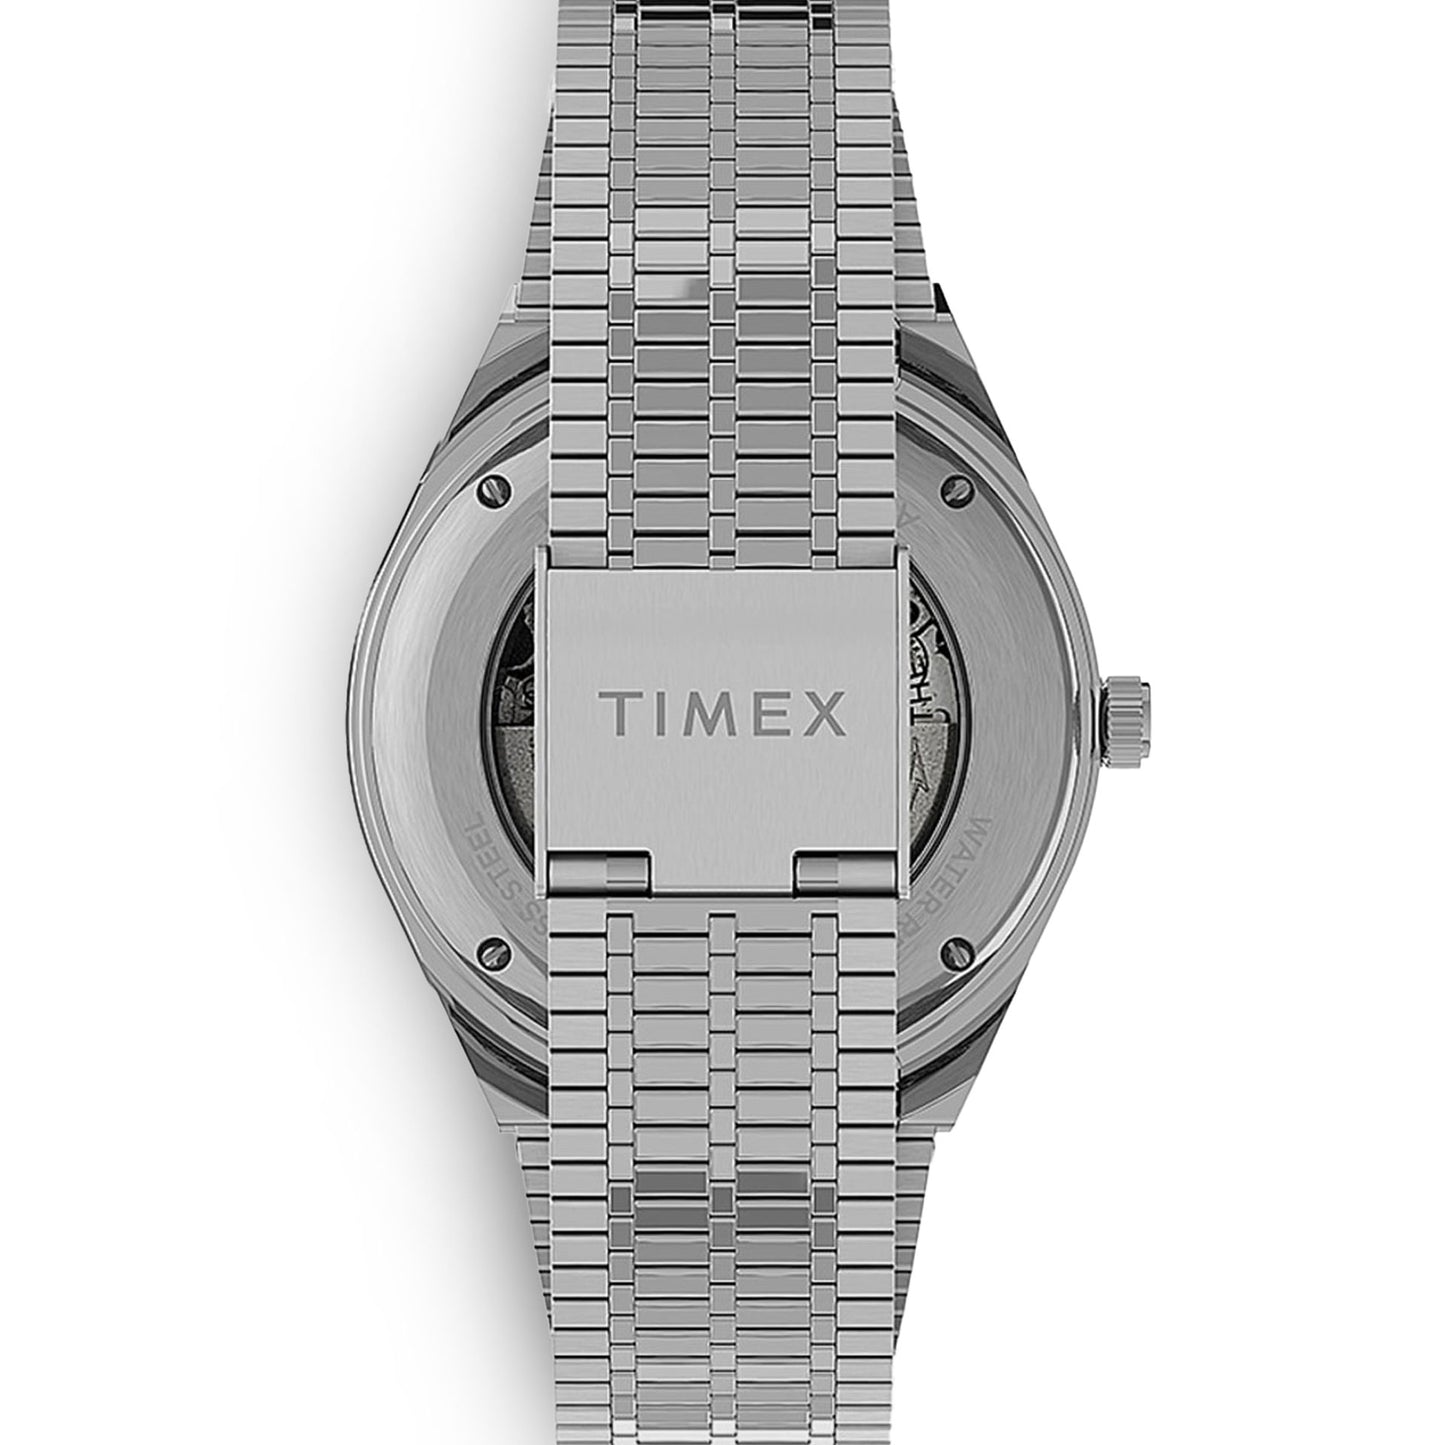 Timex M79 Coke Lünette Uhr